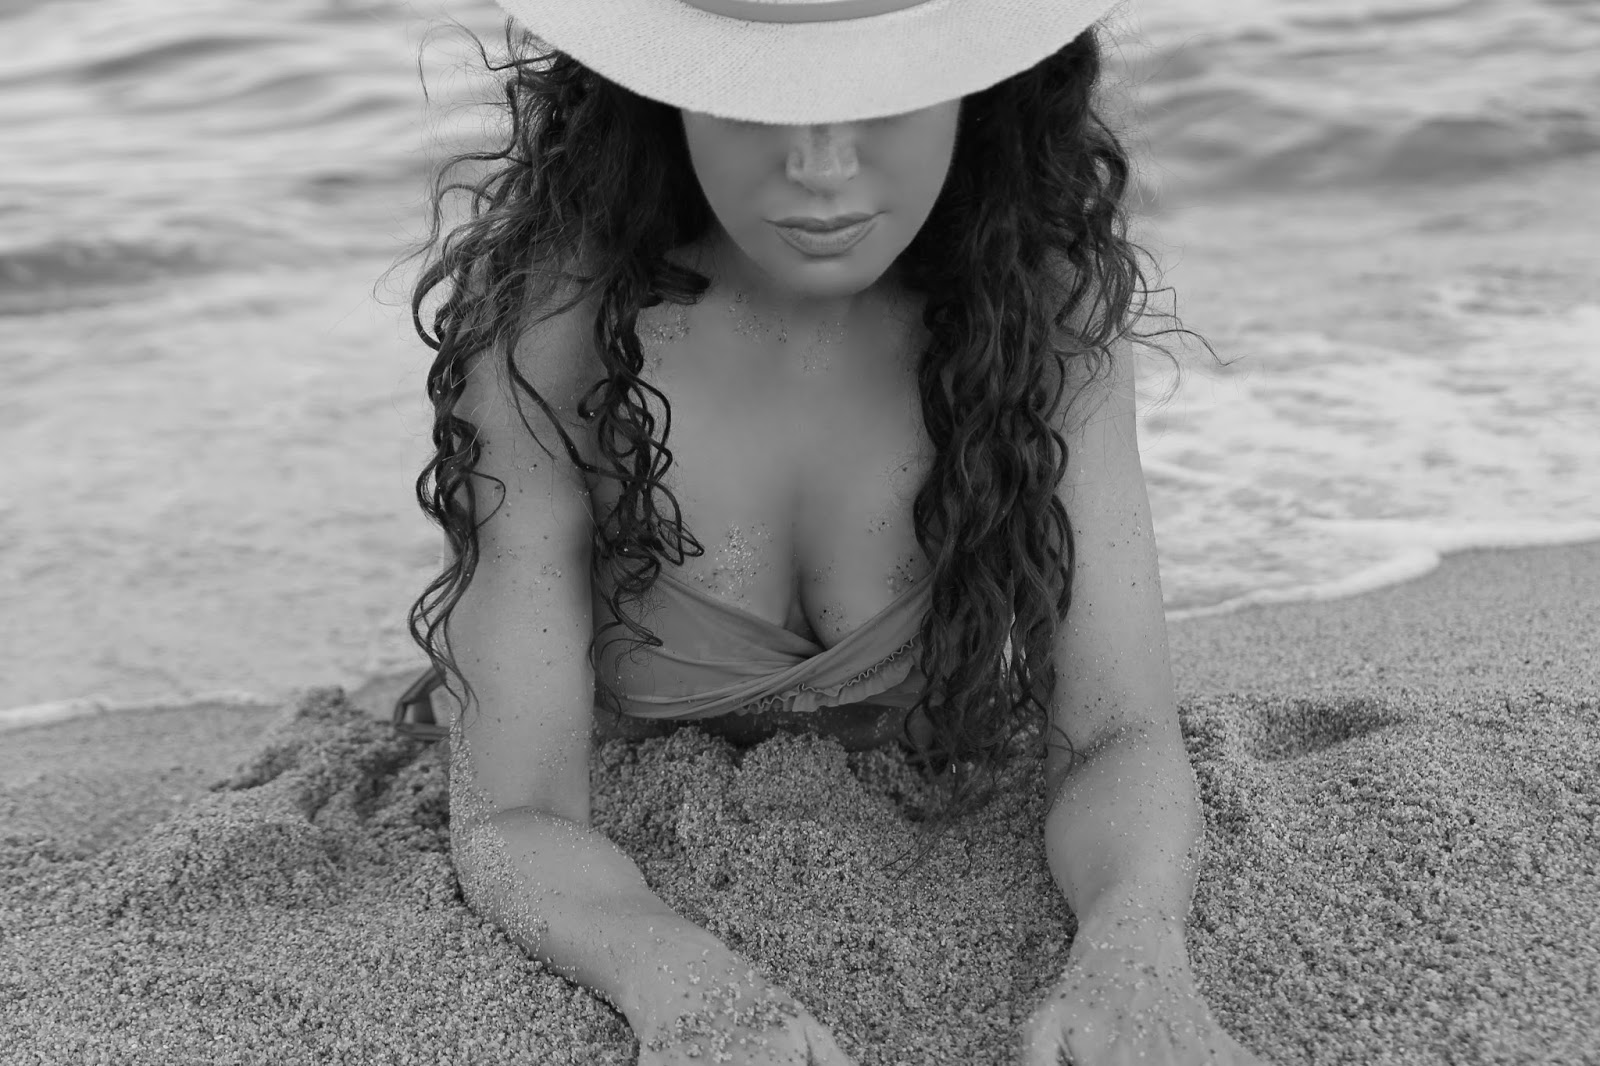 Panama Hat & Bikini… What Else?